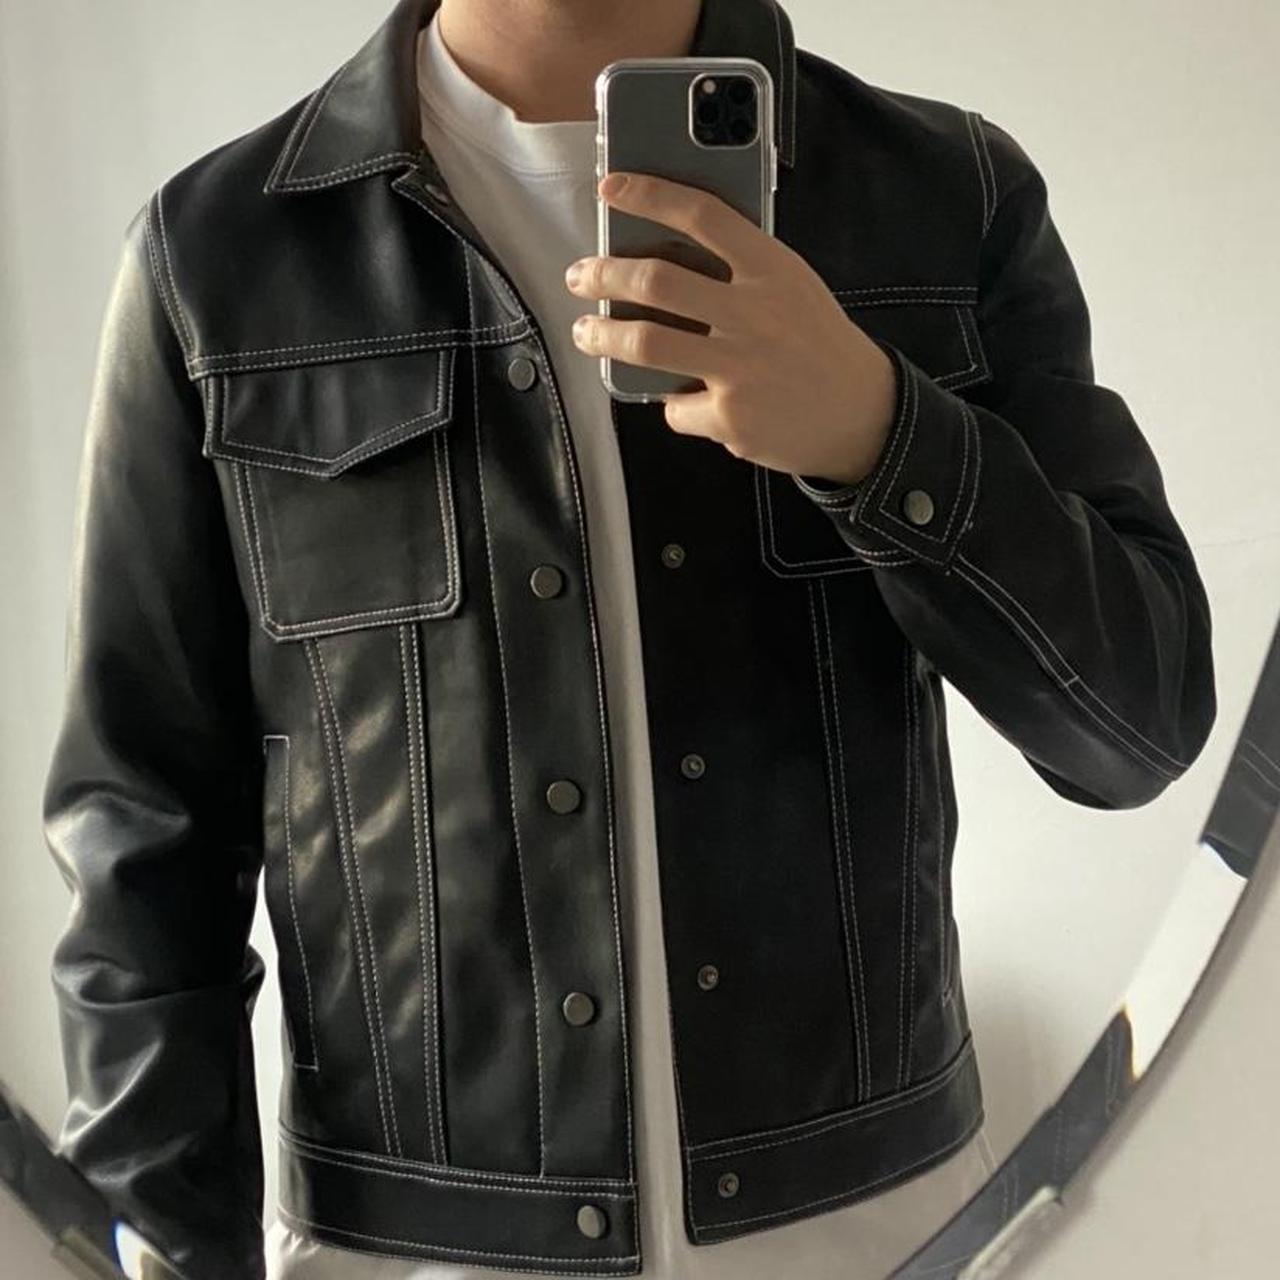 River Island Leather jacket - Depop